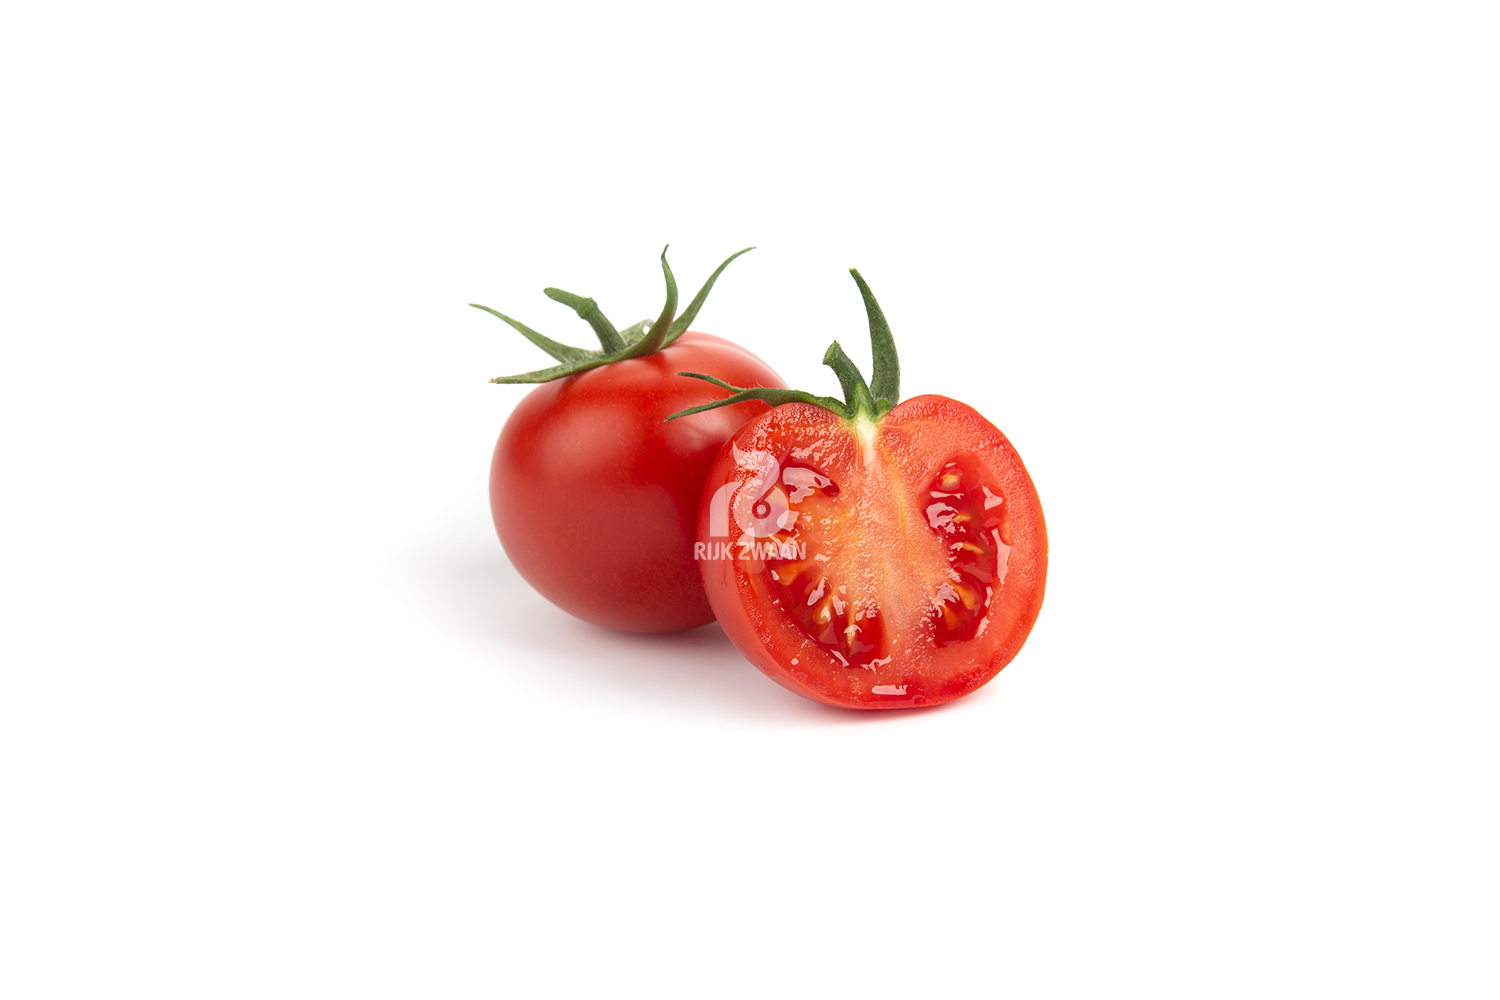 Productfotografie tomaat